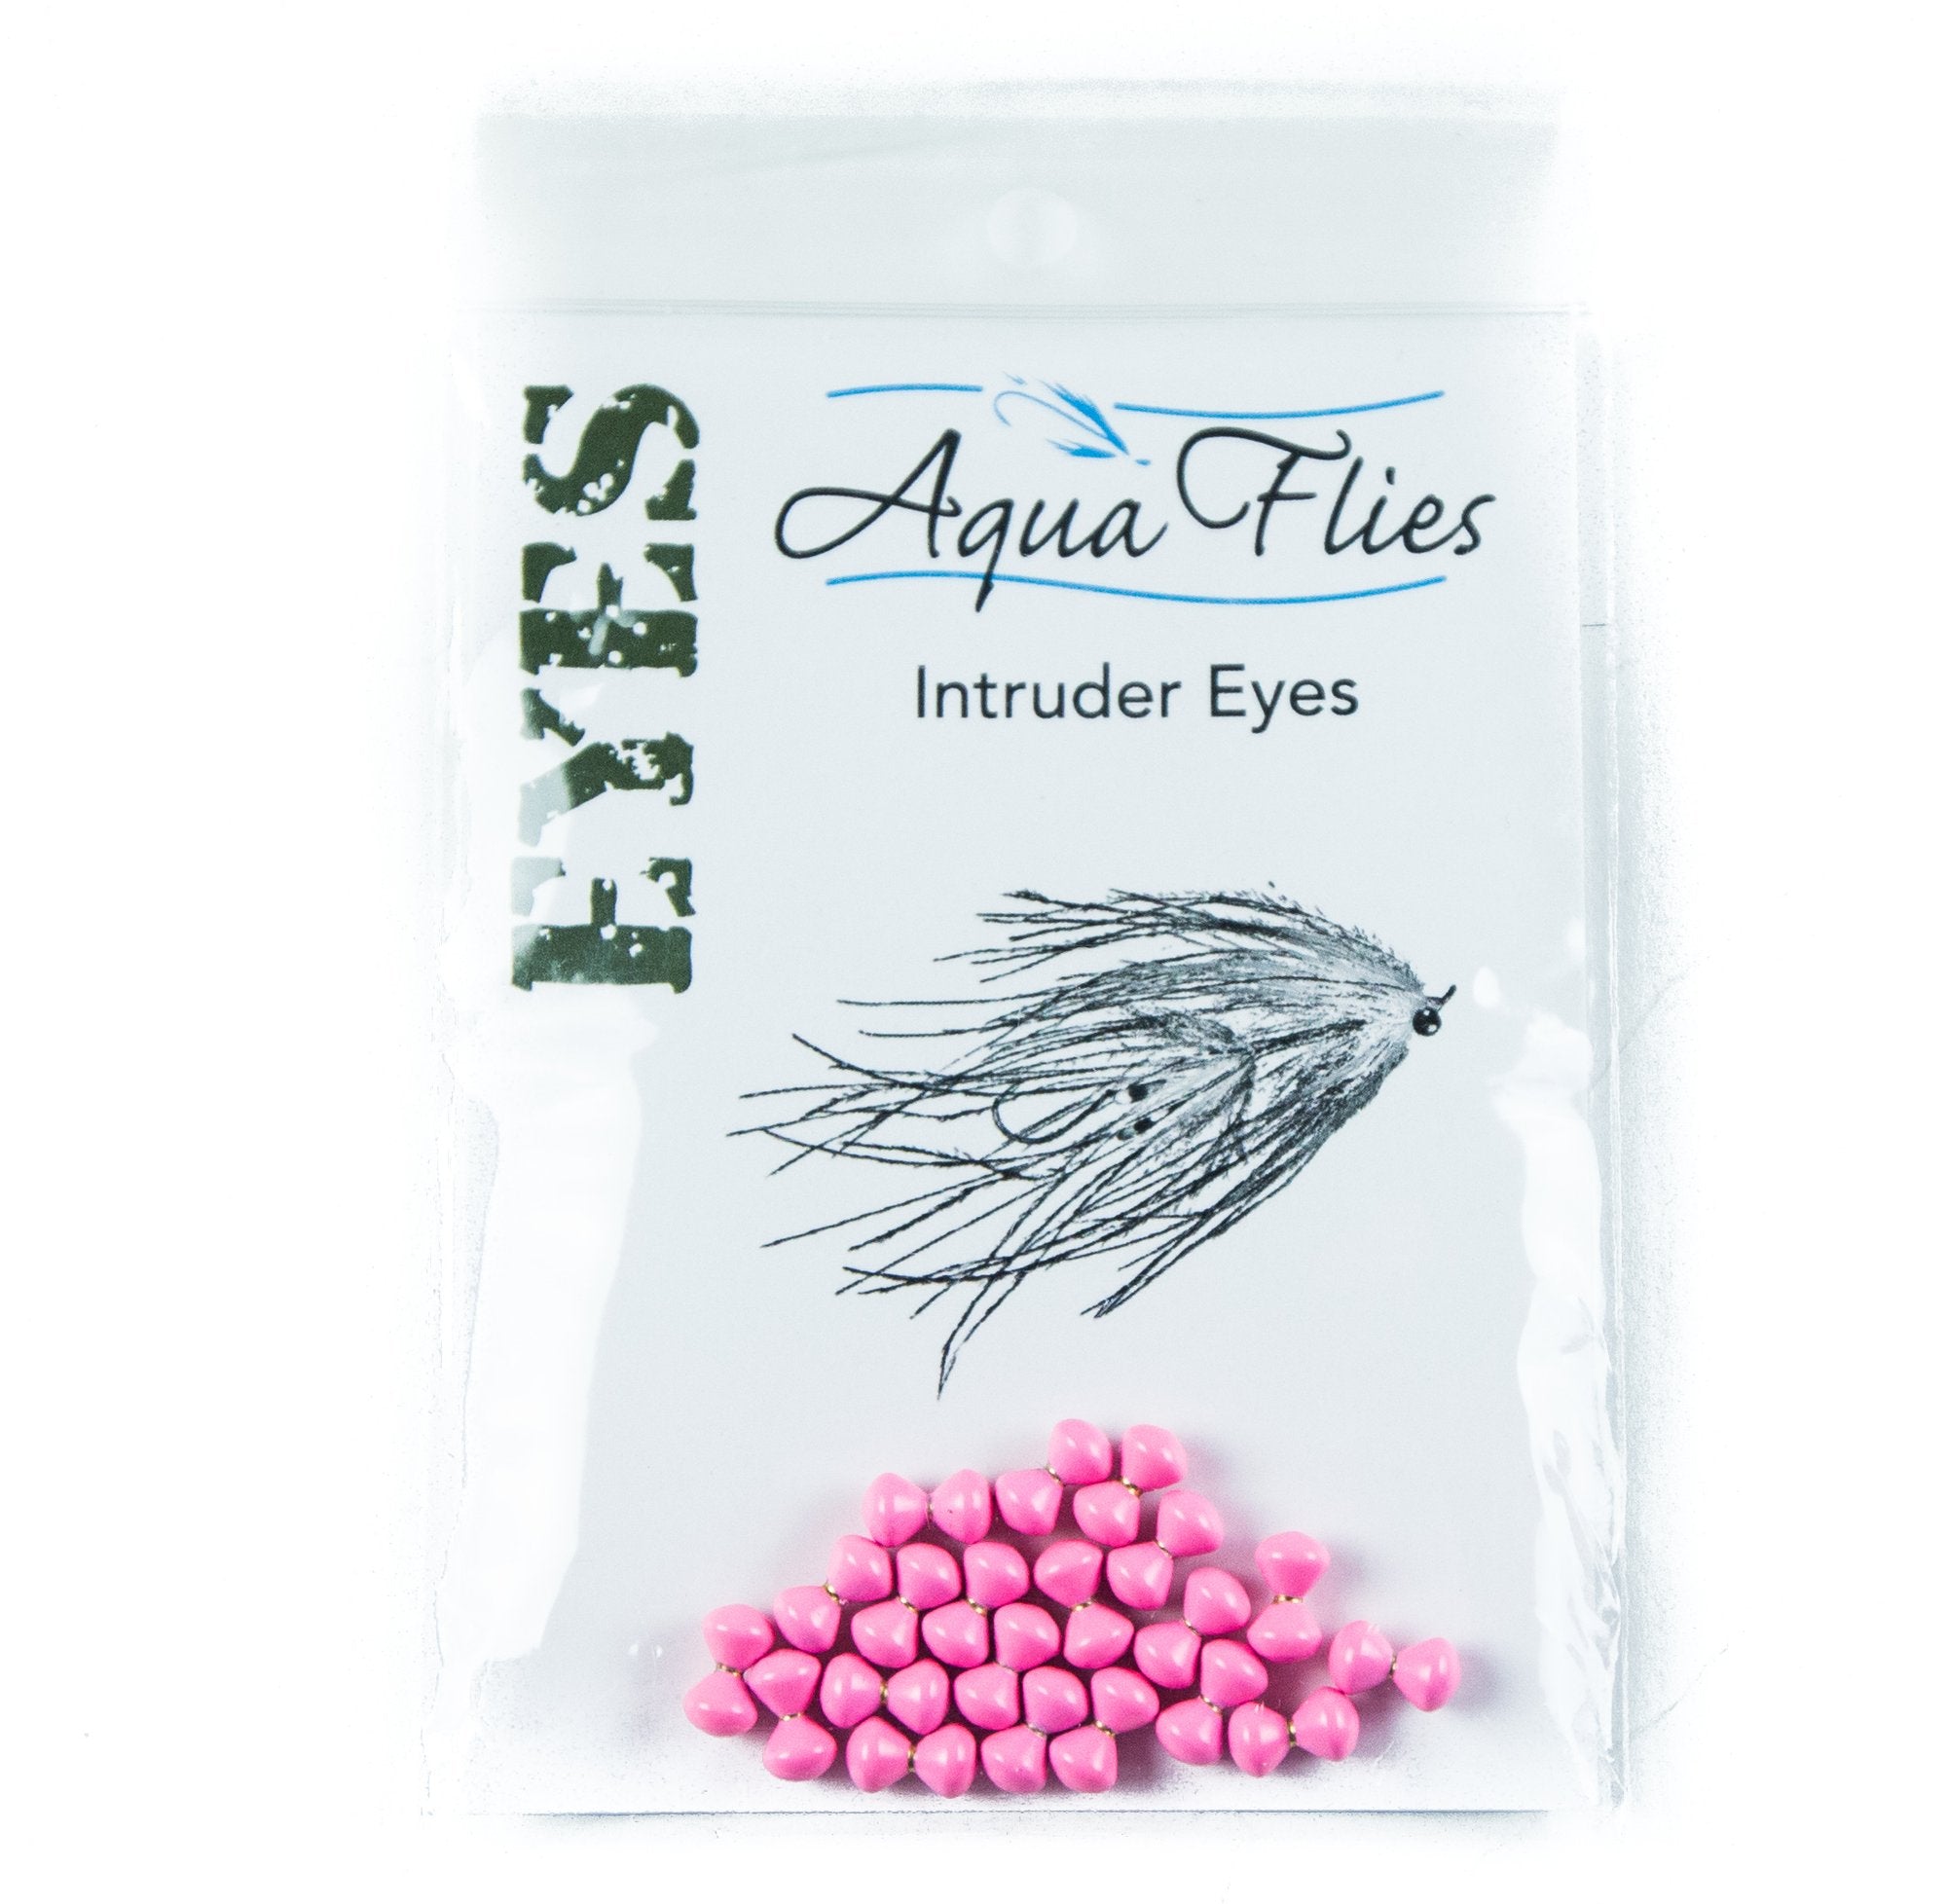 Aquaflies Intruder Eyes